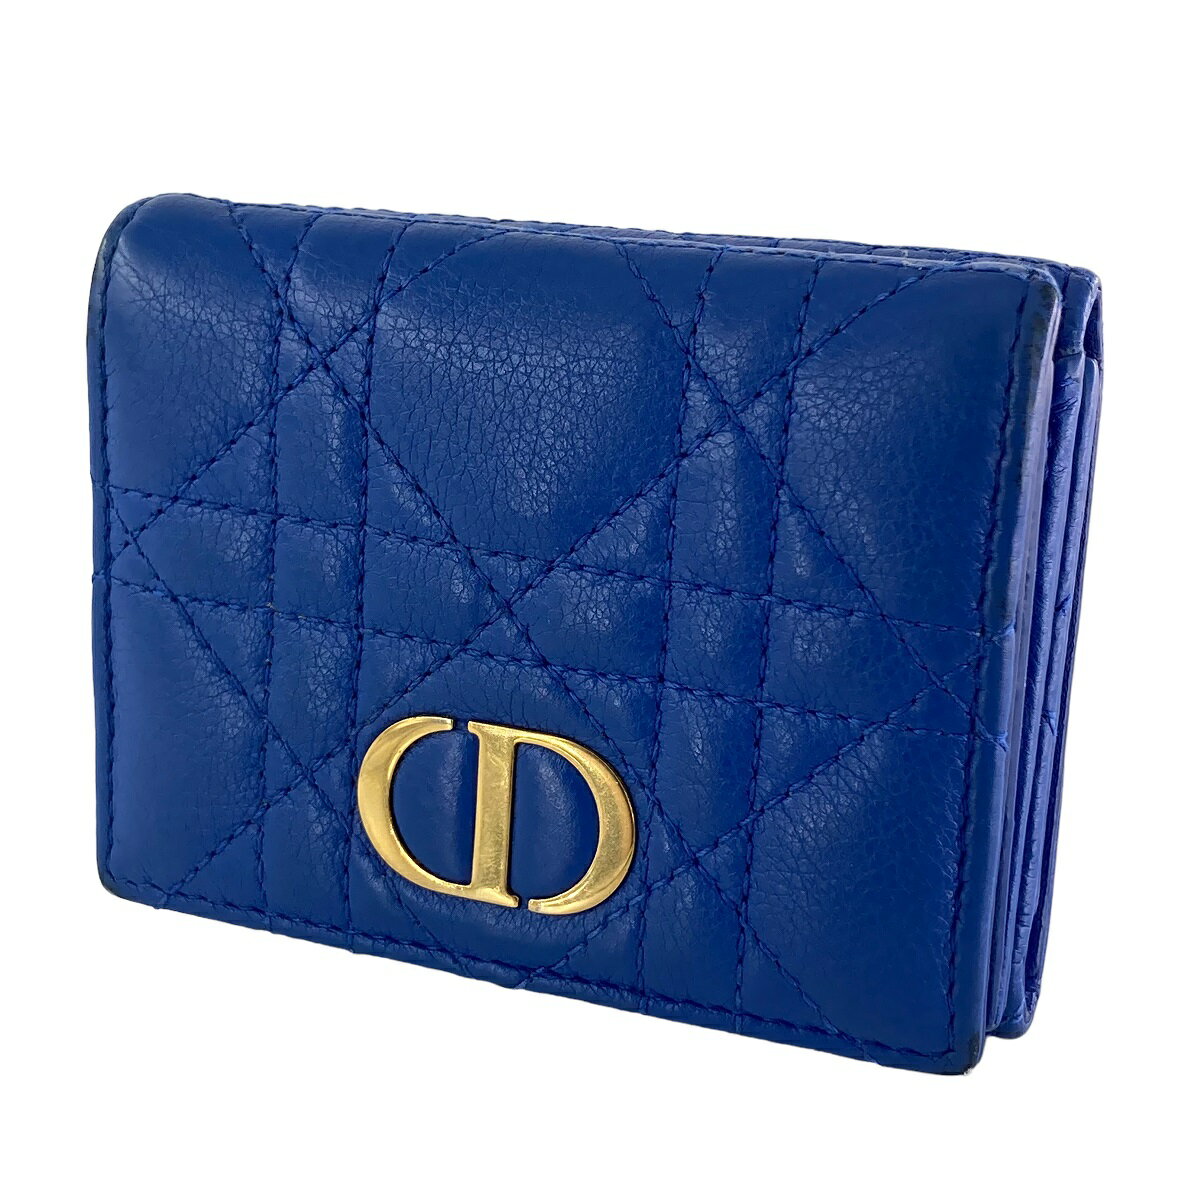 【中古】 Christian Dior クリスチャン・ディオール レディディオール コンパクトウォレット 財布 ブルー レディース 23013196 AS